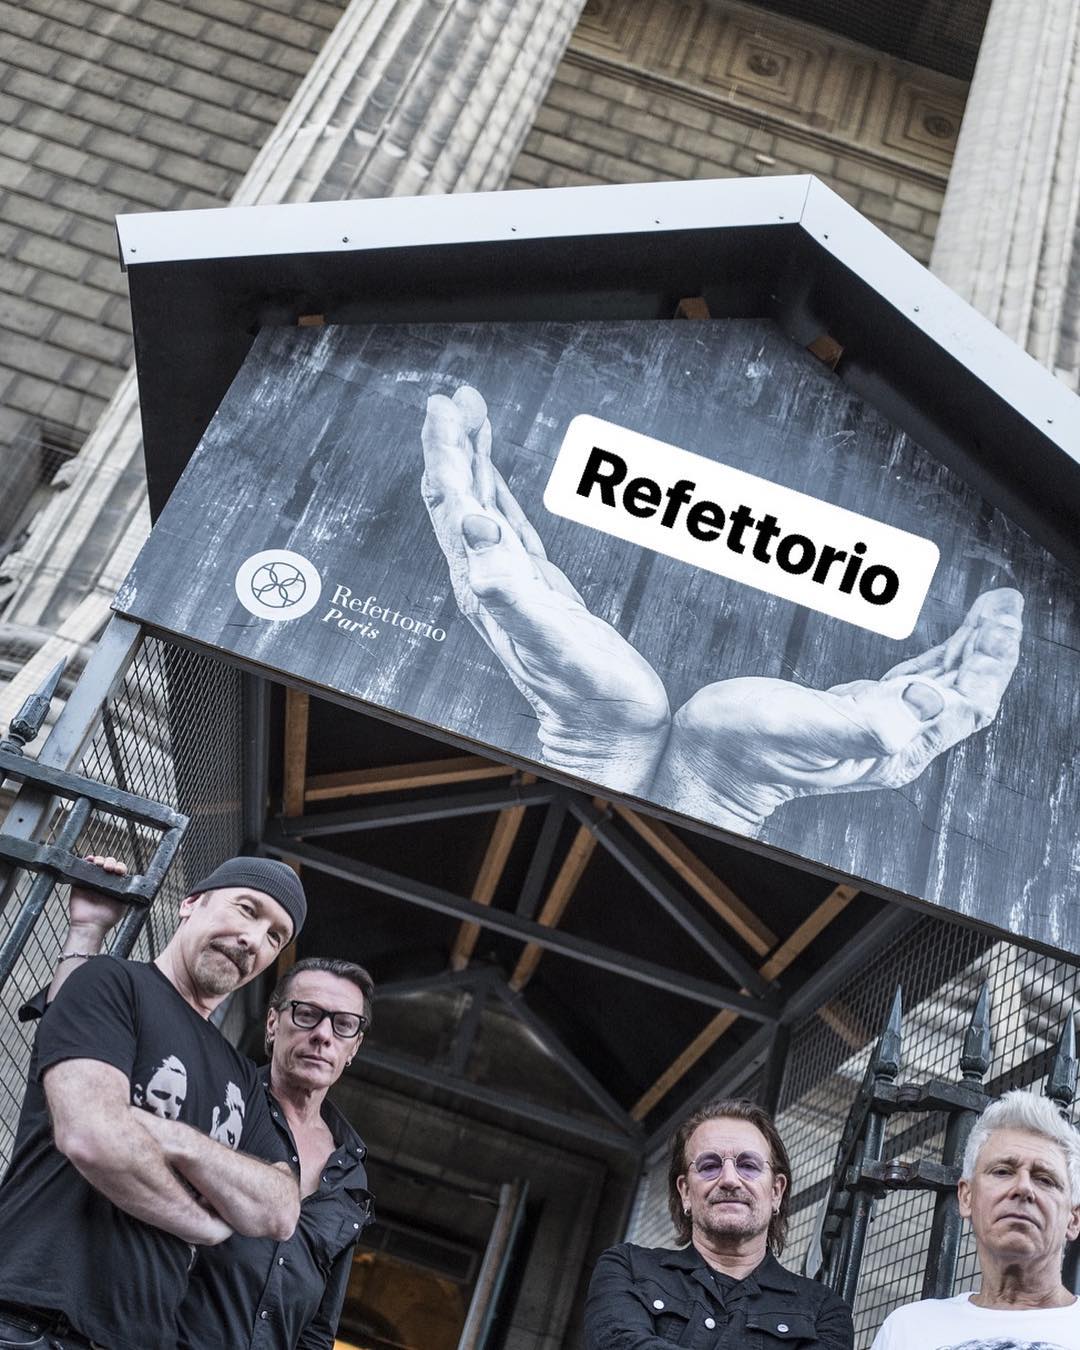 U2 at Refettorio Paris. Image courtesy of Refettorio Paris's Instagram